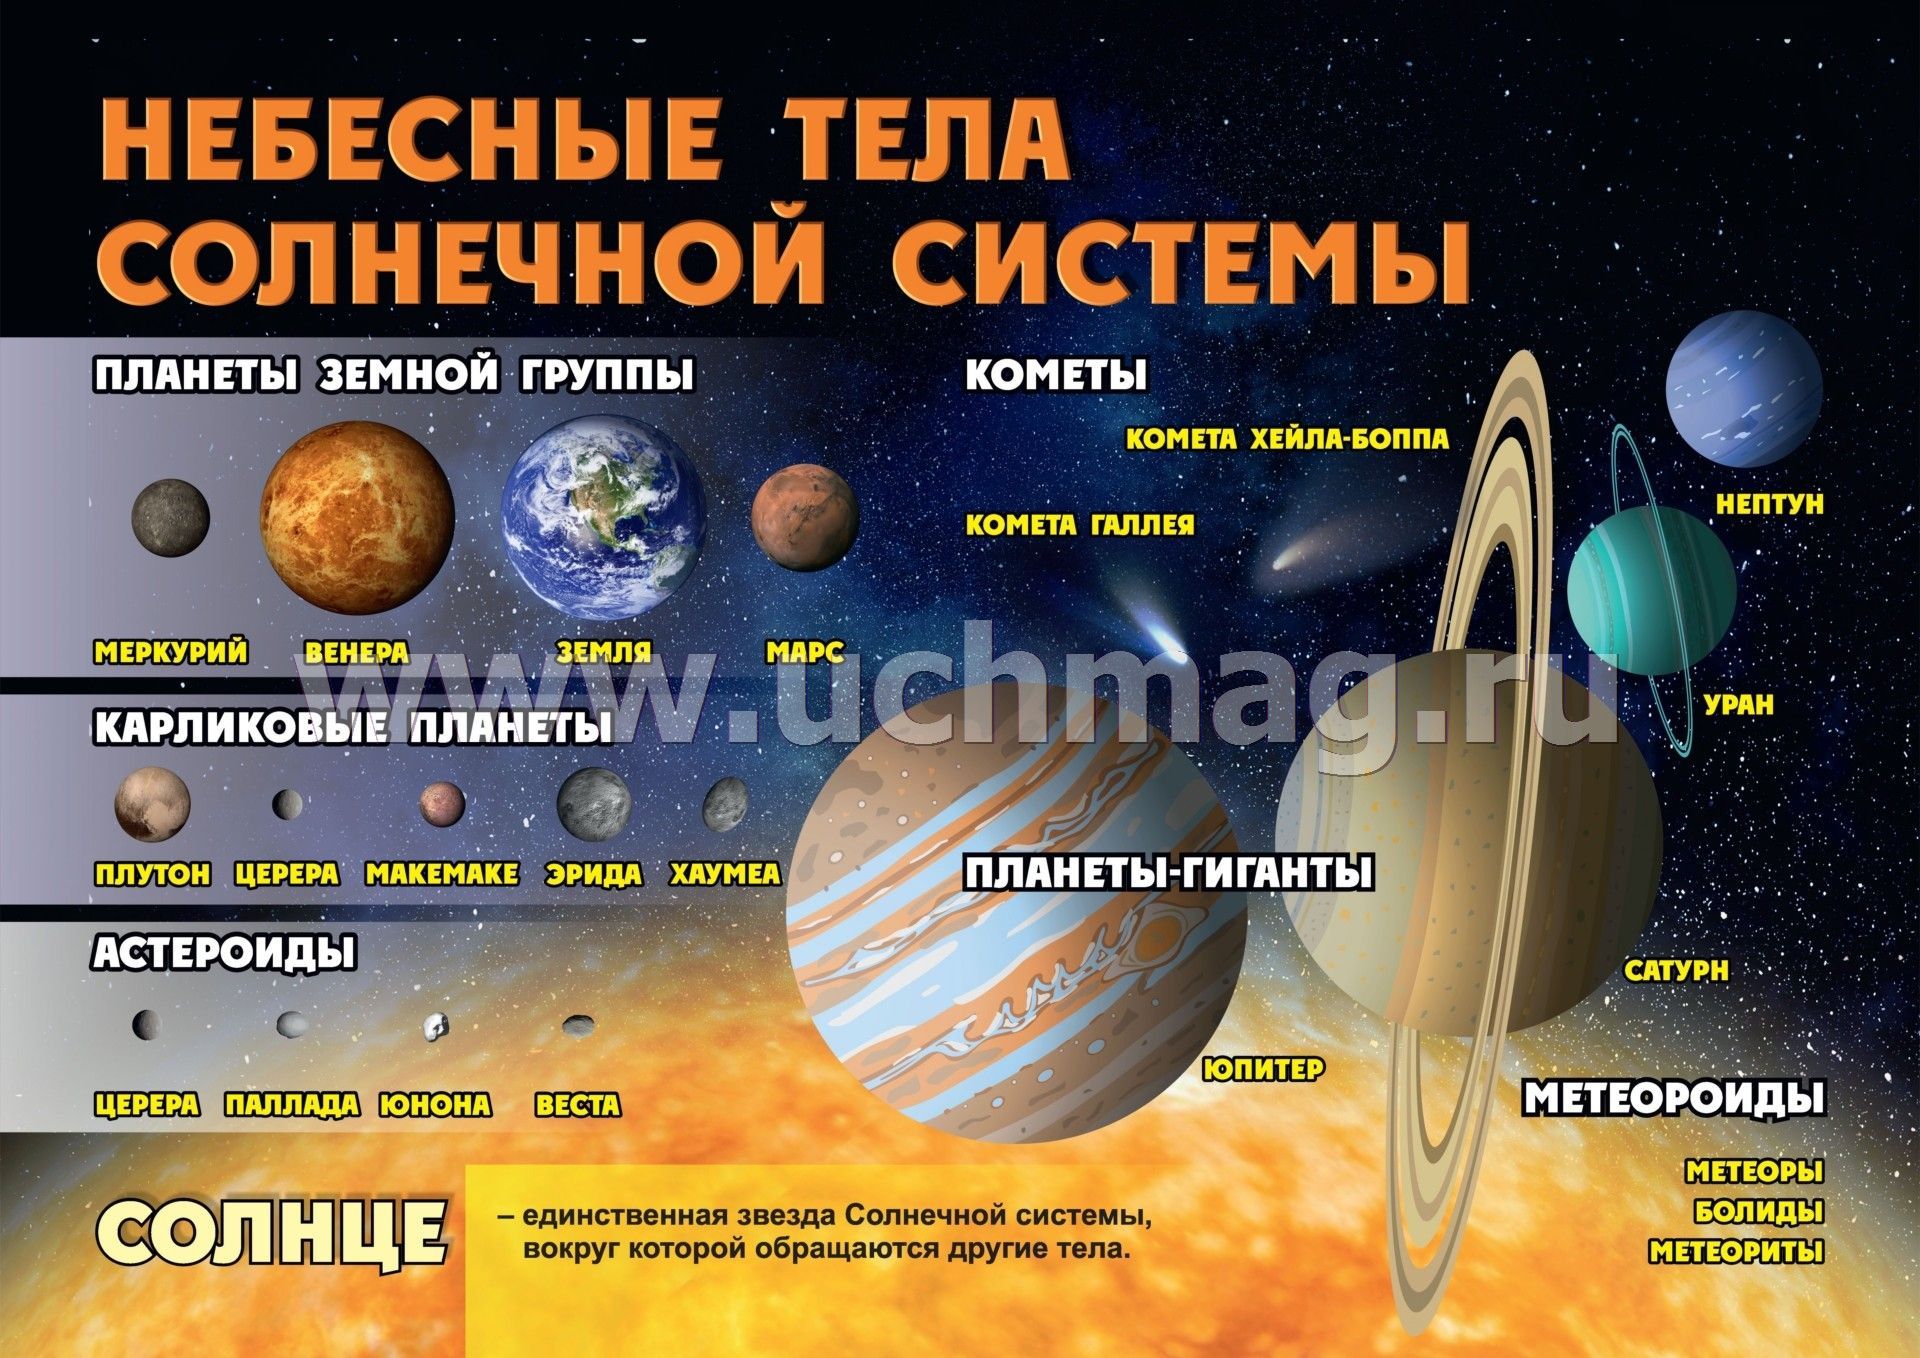 Элементы небесного тела. Небесные тела солнечной системы. Плакат по астрономии. Планеты солнечной системы кометы. Космические объекты солнечной системы.